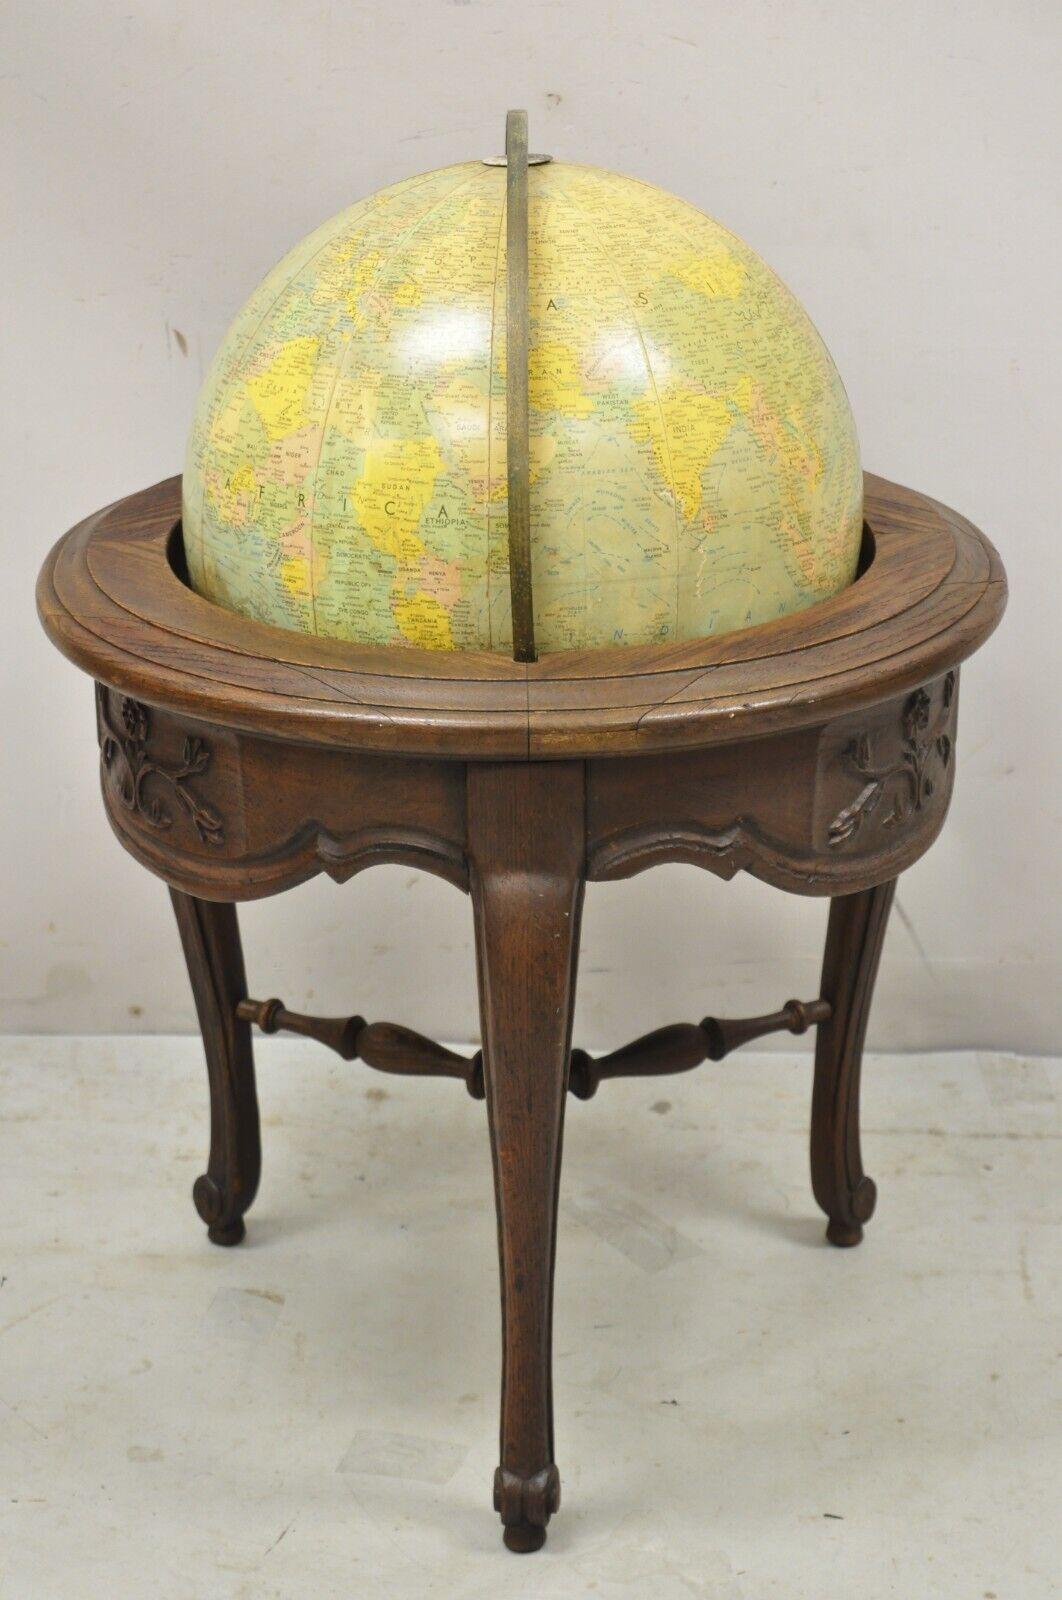 Vintage Replogle Globen Französisch Land Provincial Style Revolving Floor Globe Oak Stand. Der Artikel verfügt über einen drehbaren Globus aus Fiberglas, einen Massivholzrahmen, eine schöne Holzmaserung, eine gealterte Oberfläche, schön geschnitzte